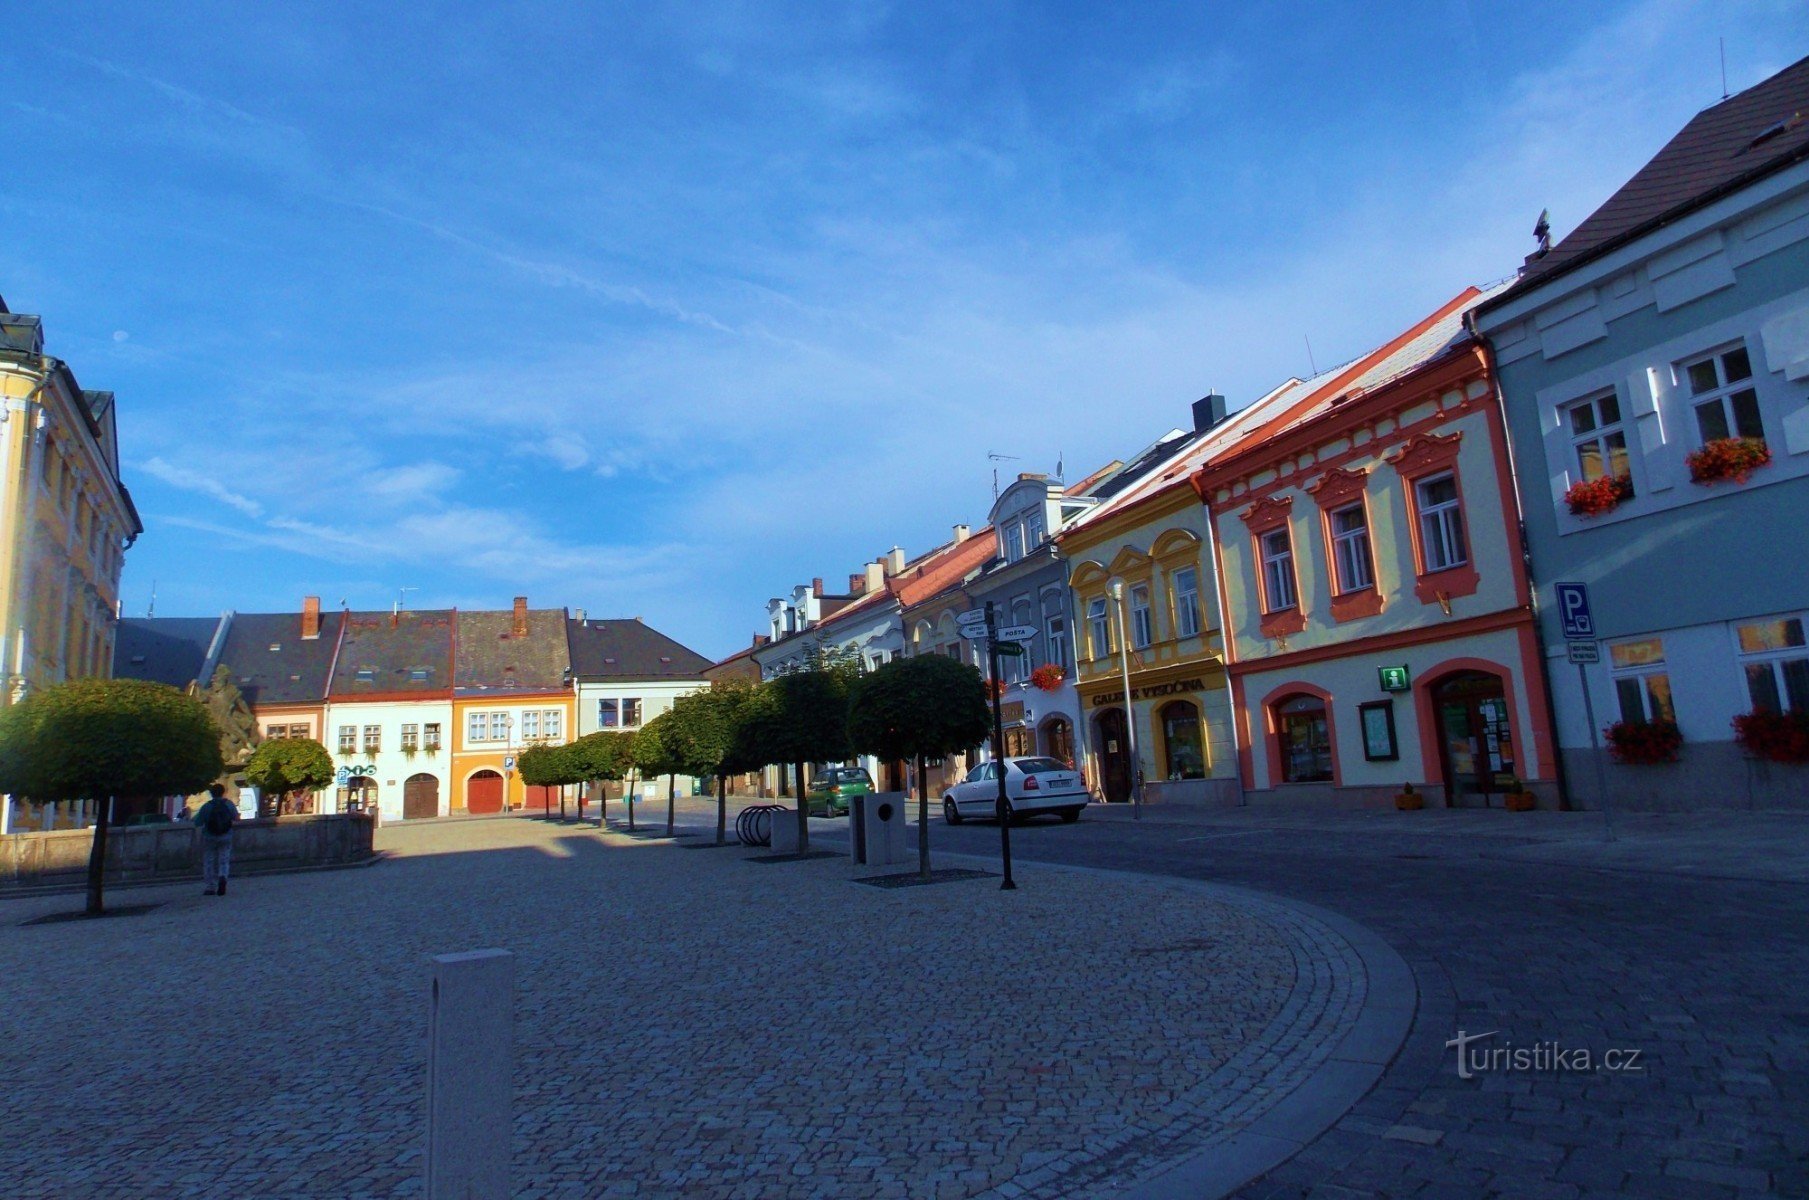 Palackého náměstí nella città reale - Polička